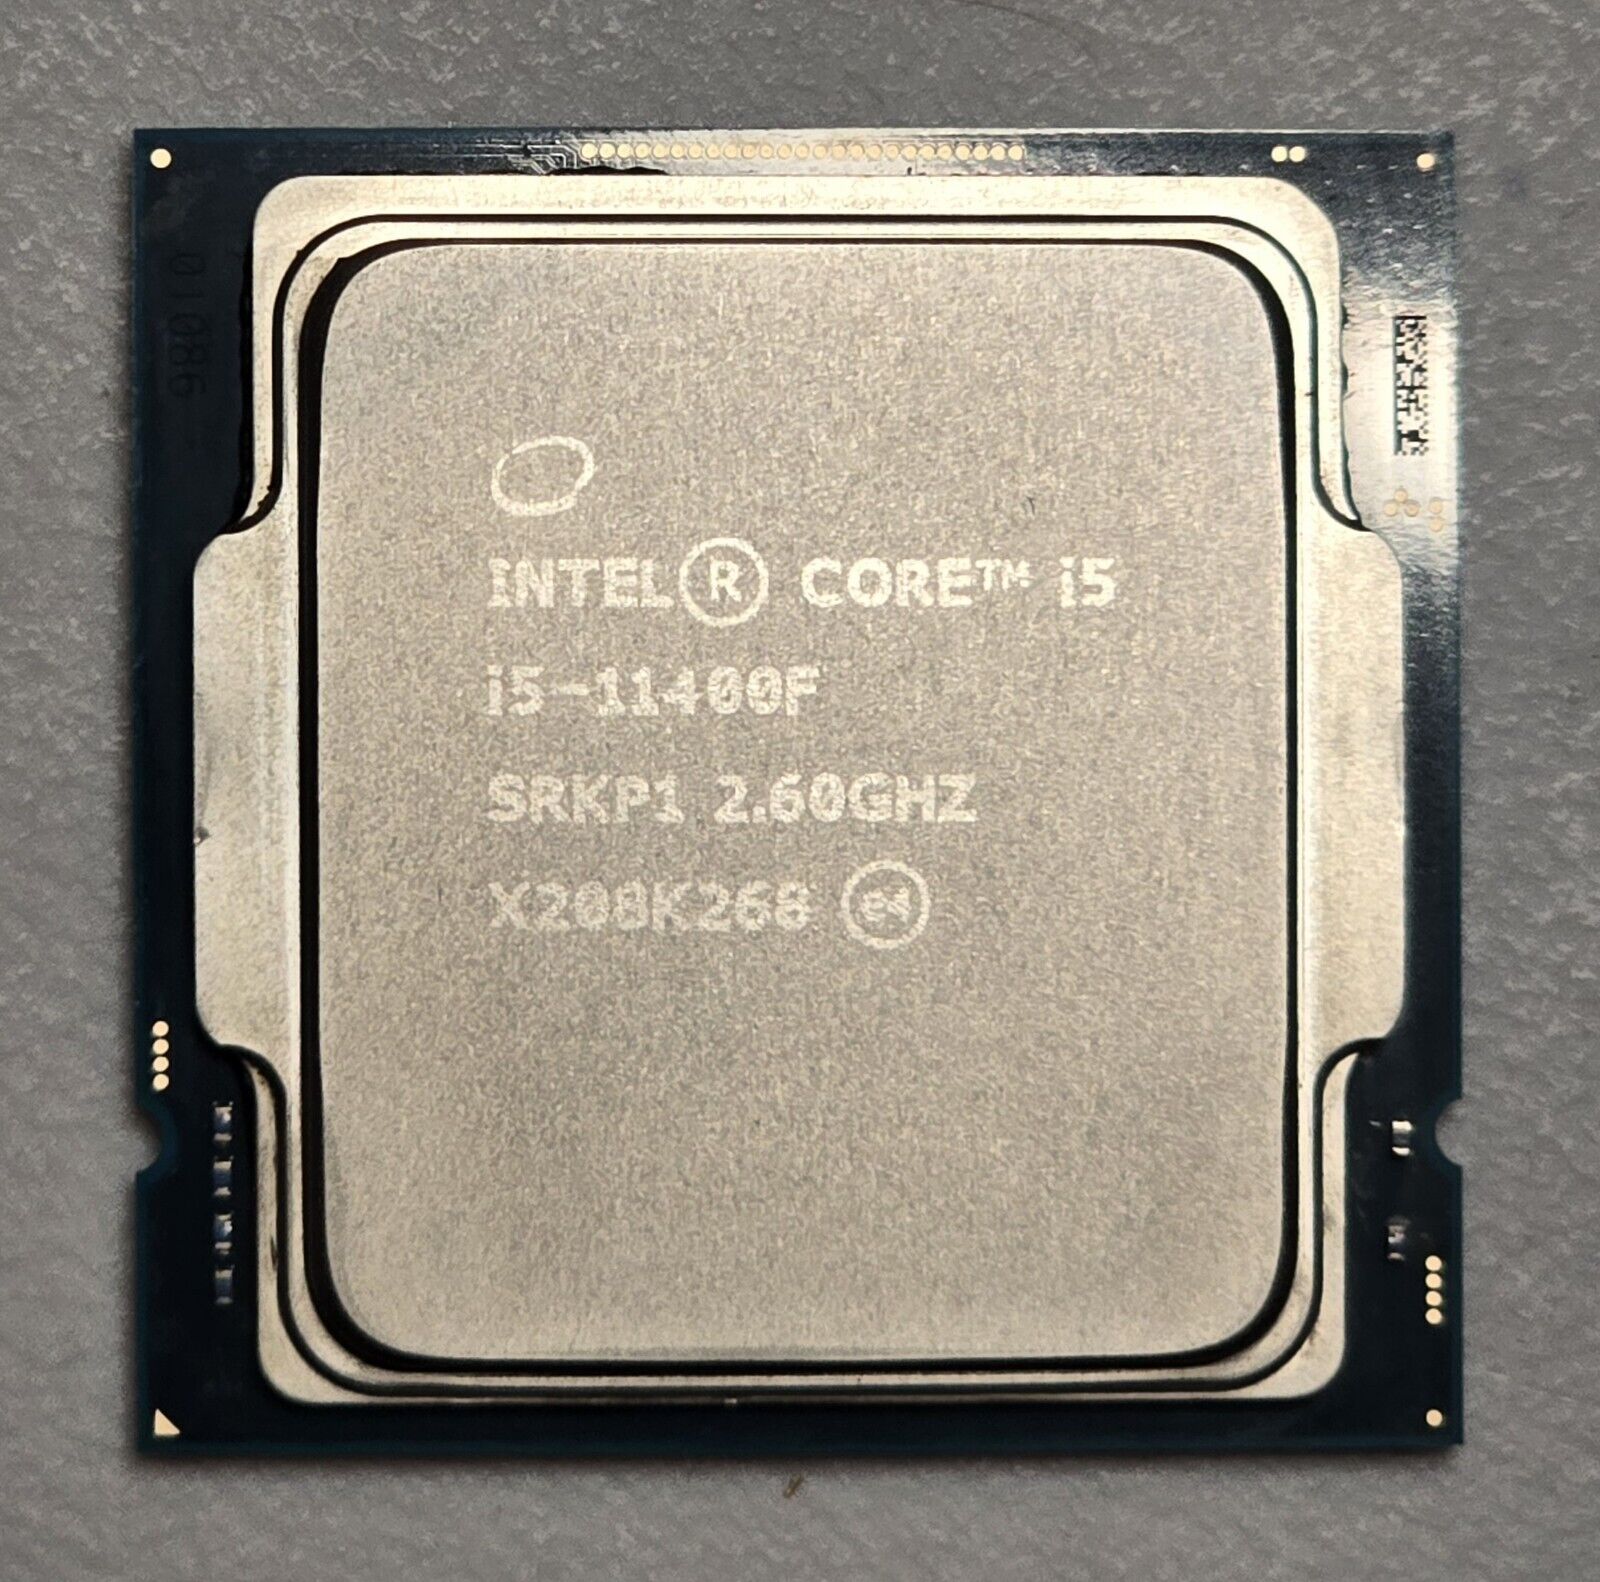 Intel Core i5-11400F 2.6GHz 6 Core LGA 1200 Desktop Processor - SRKP1 Excellent